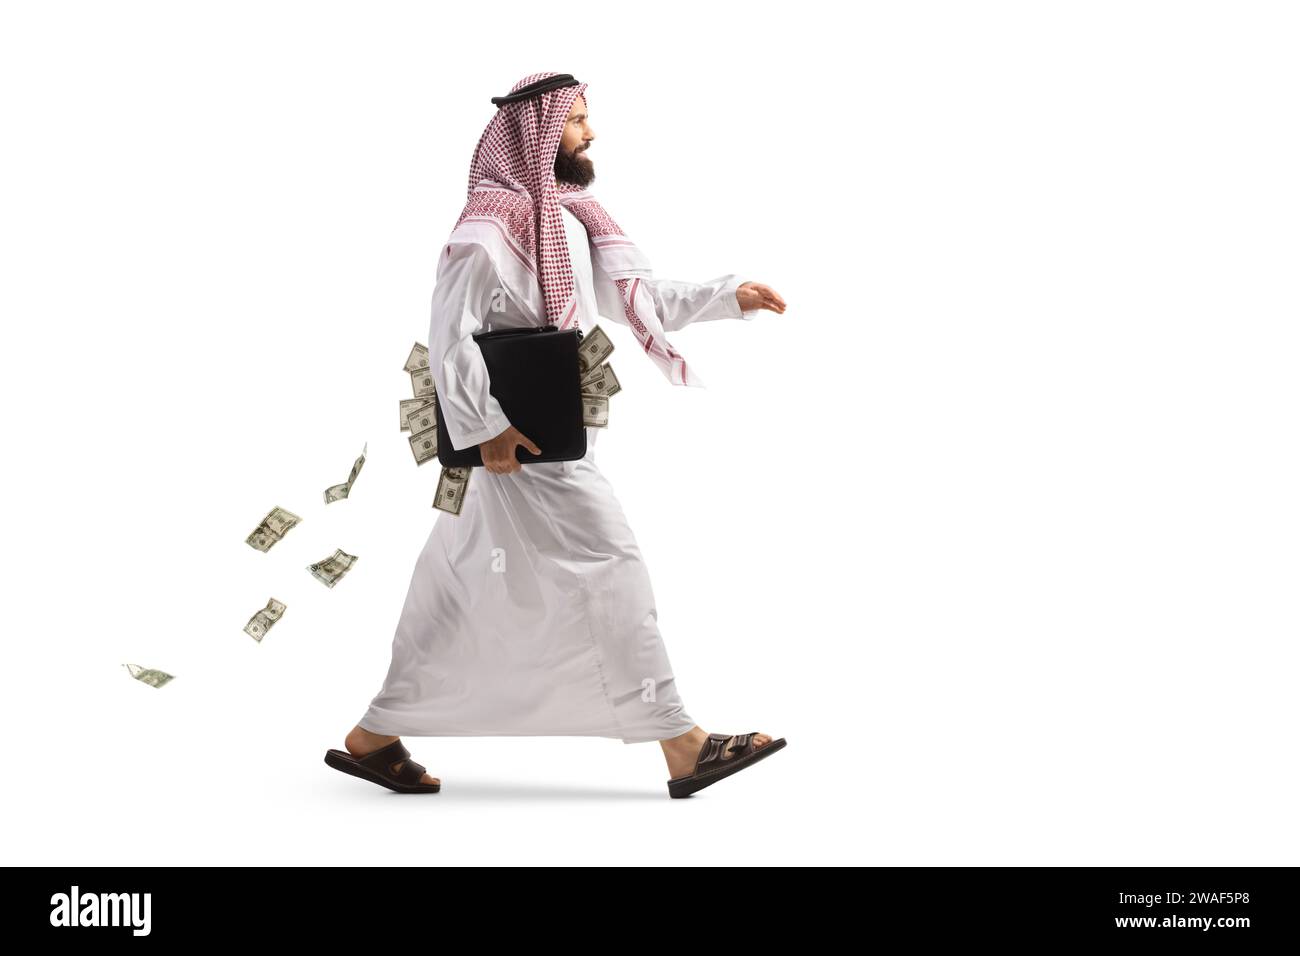 Foto a lunghezza intera di un uomo arabo suadi che cammina con una valigetta piena di soldi isolata su sfondo bianco Foto Stock